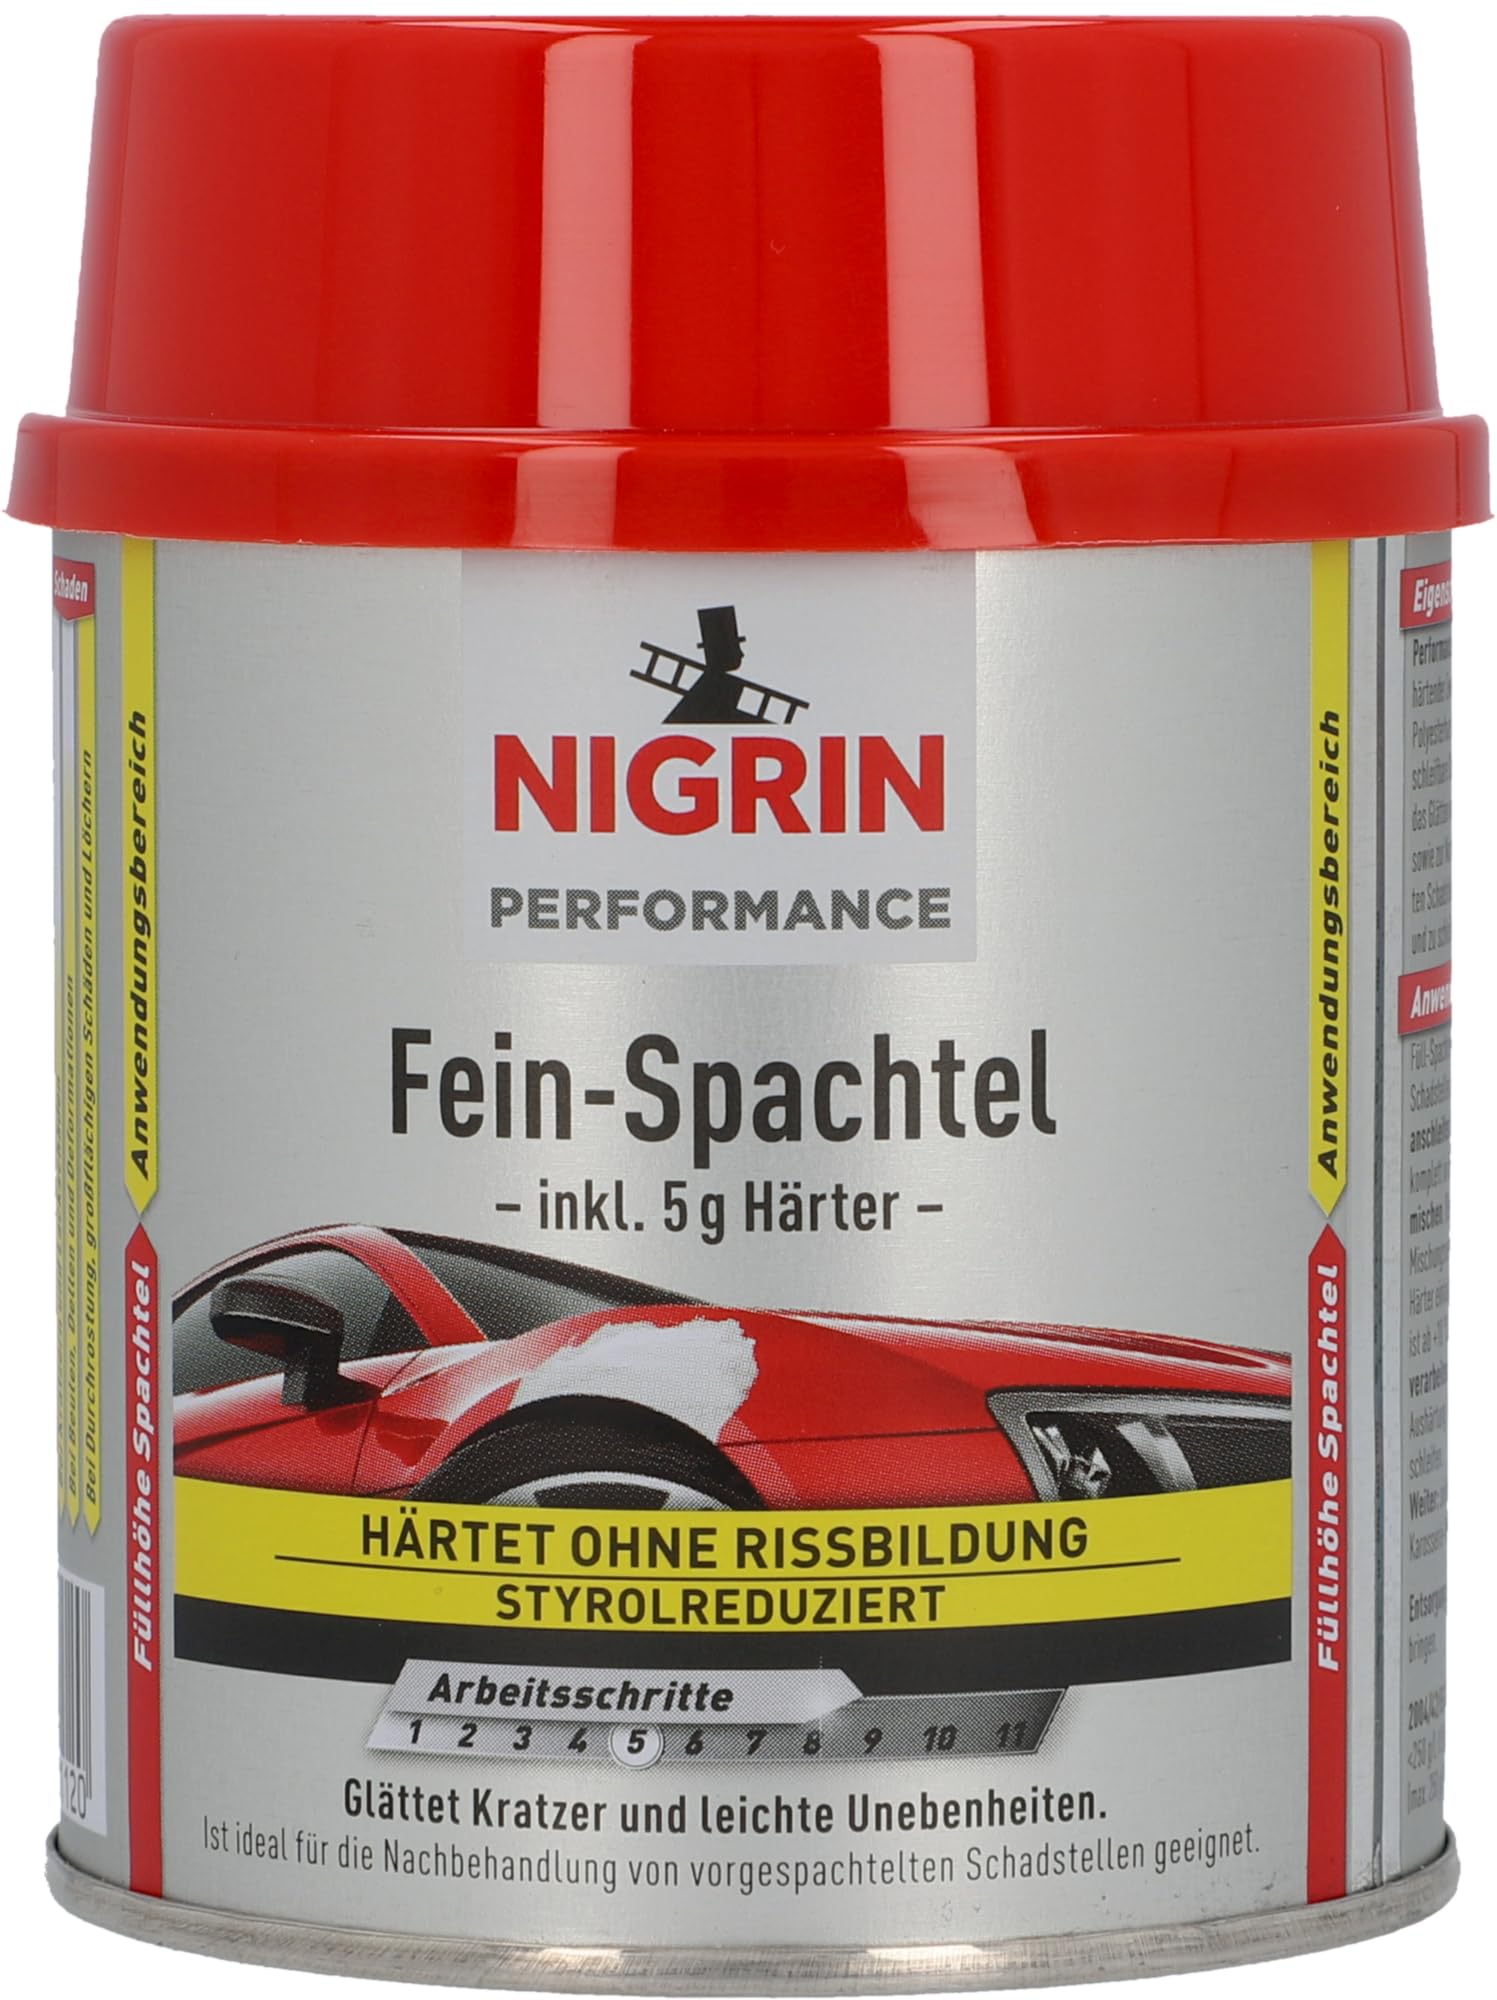 NIGRIN Performance Fein-Spachtel, härtet ohne Rissbildung, glättet Kratzer und Unebenheiten, 245 g inkl. 5 g Härter von NIGRIN